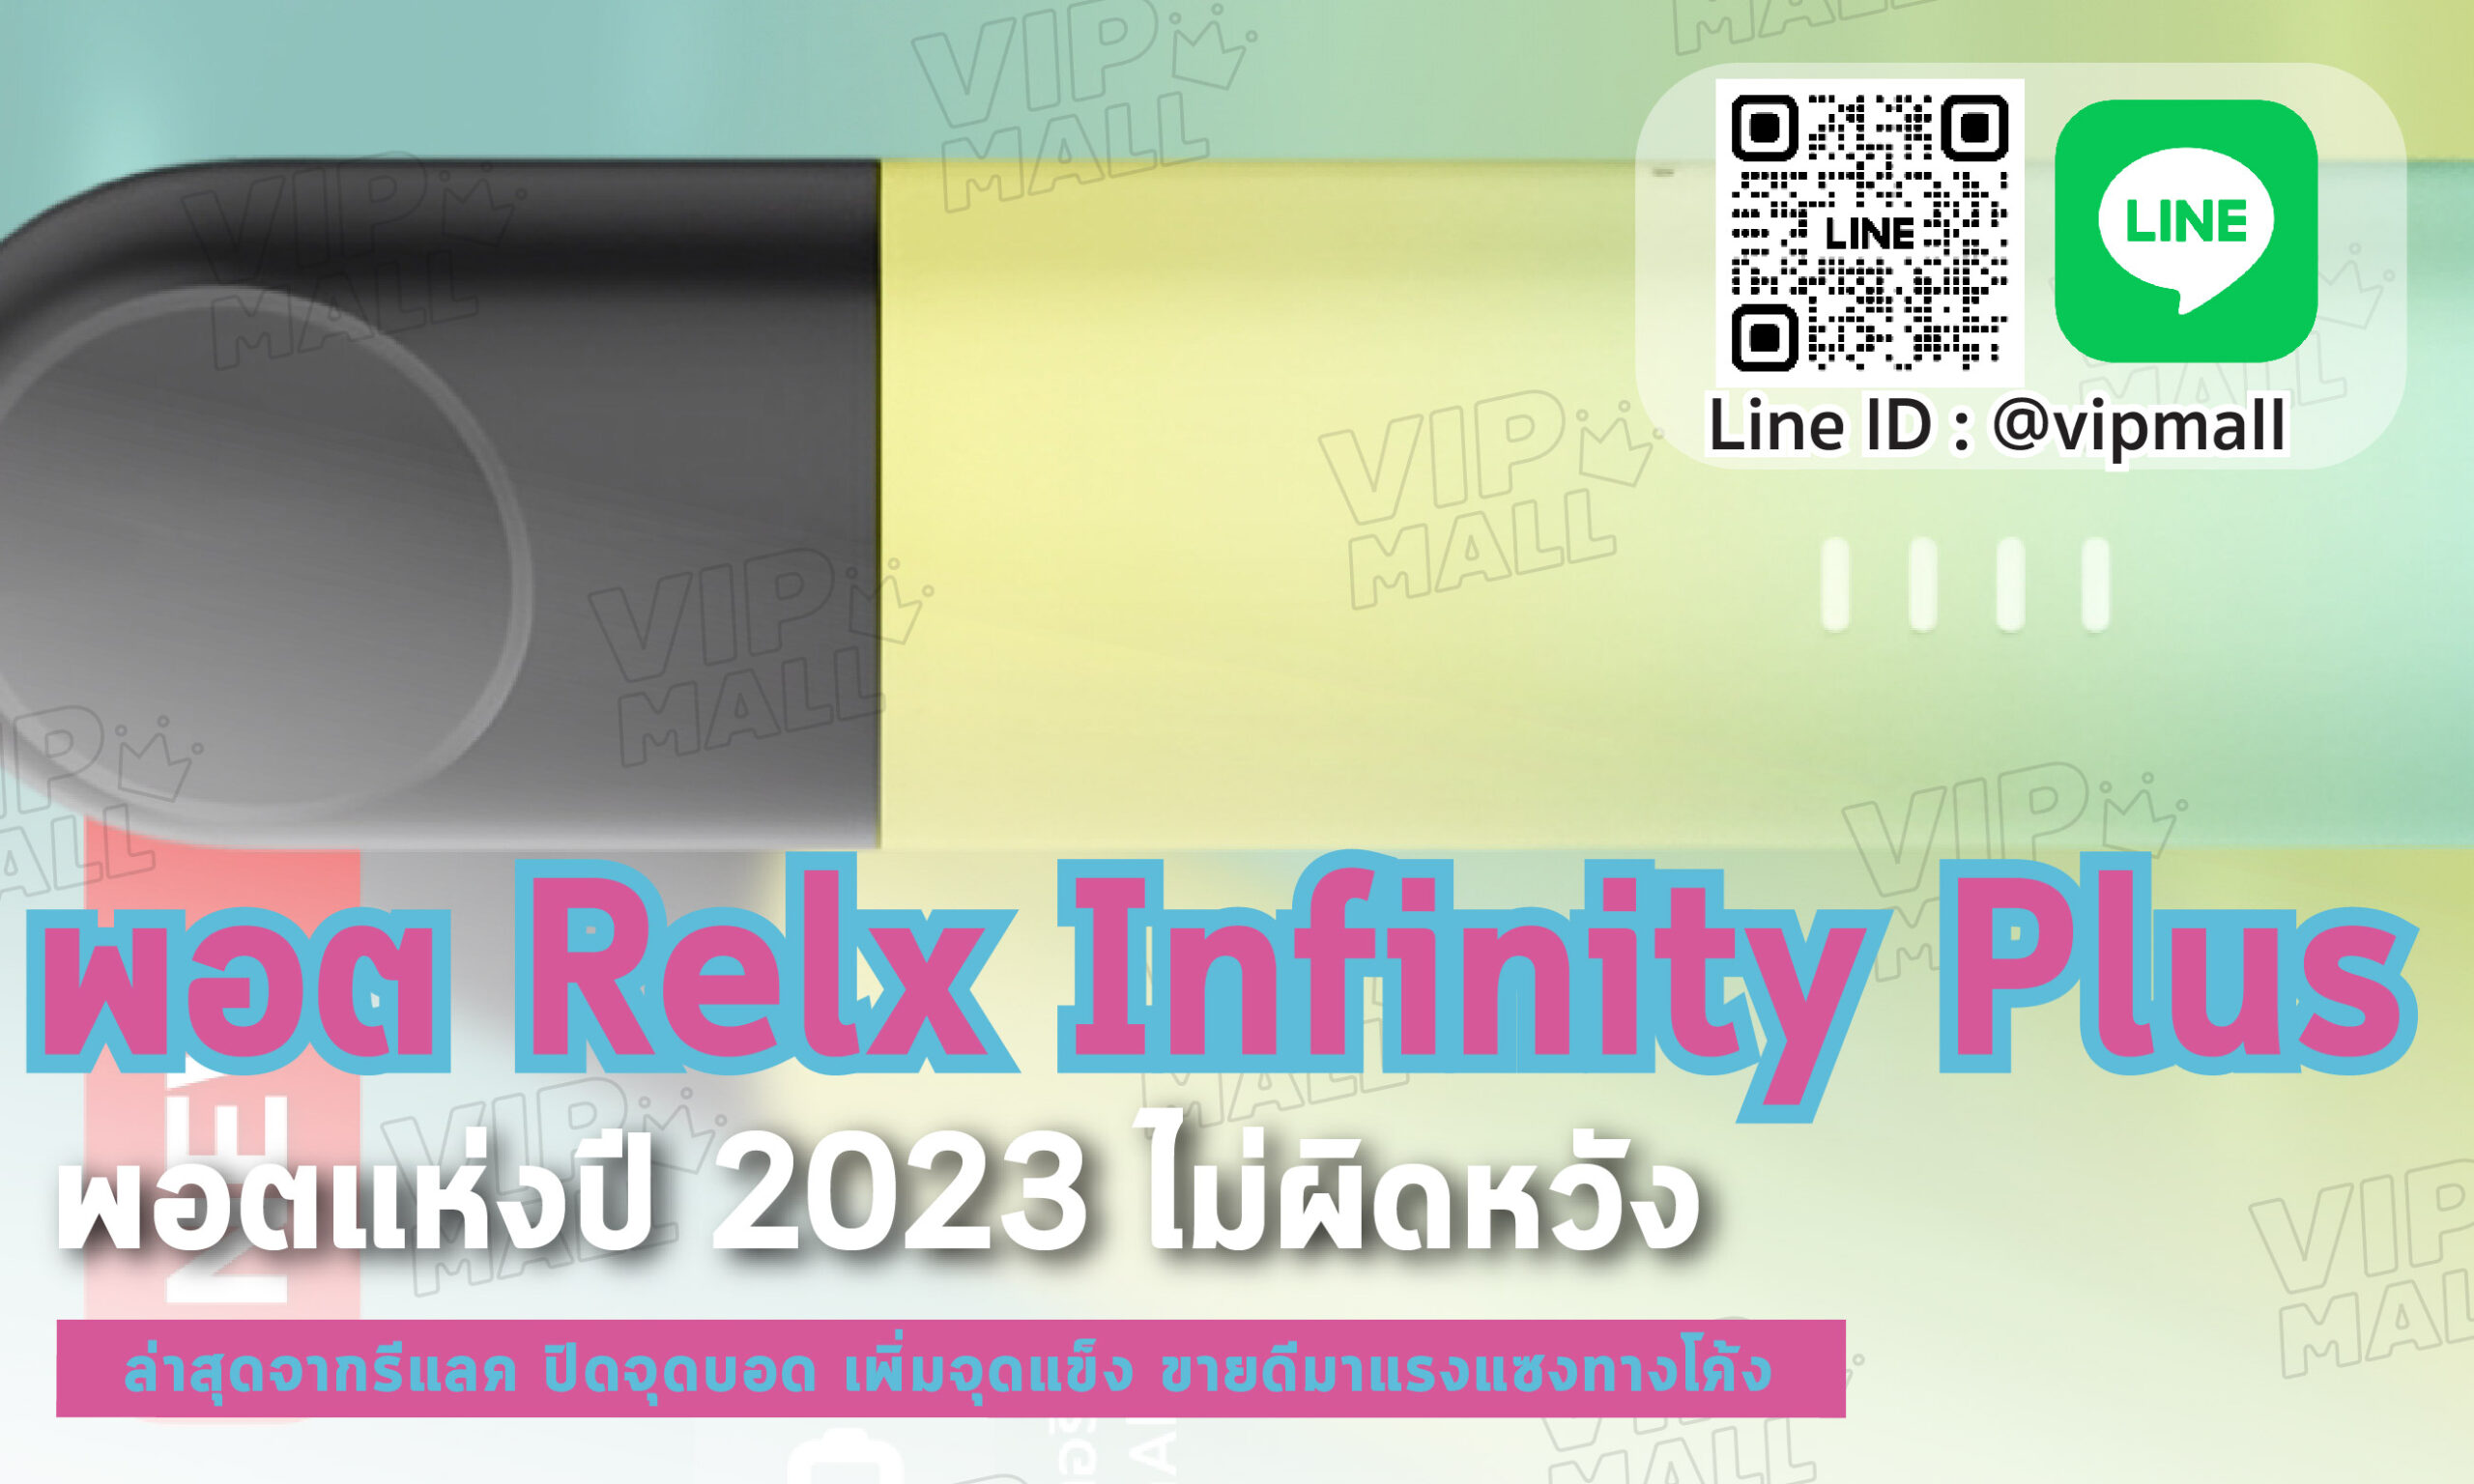 พอต Relx Infinity Plus ผลิตภัณฑ์พอดบุหรี่ไฟฟ้าสุดแจ่มของค่าย RELX มีไฟแสดงสถานะแบตเตอรี่ไว้อย่างชัดเจน เพื่อให้ทราบถึงปริมาณแบตตอนใกล้หมด